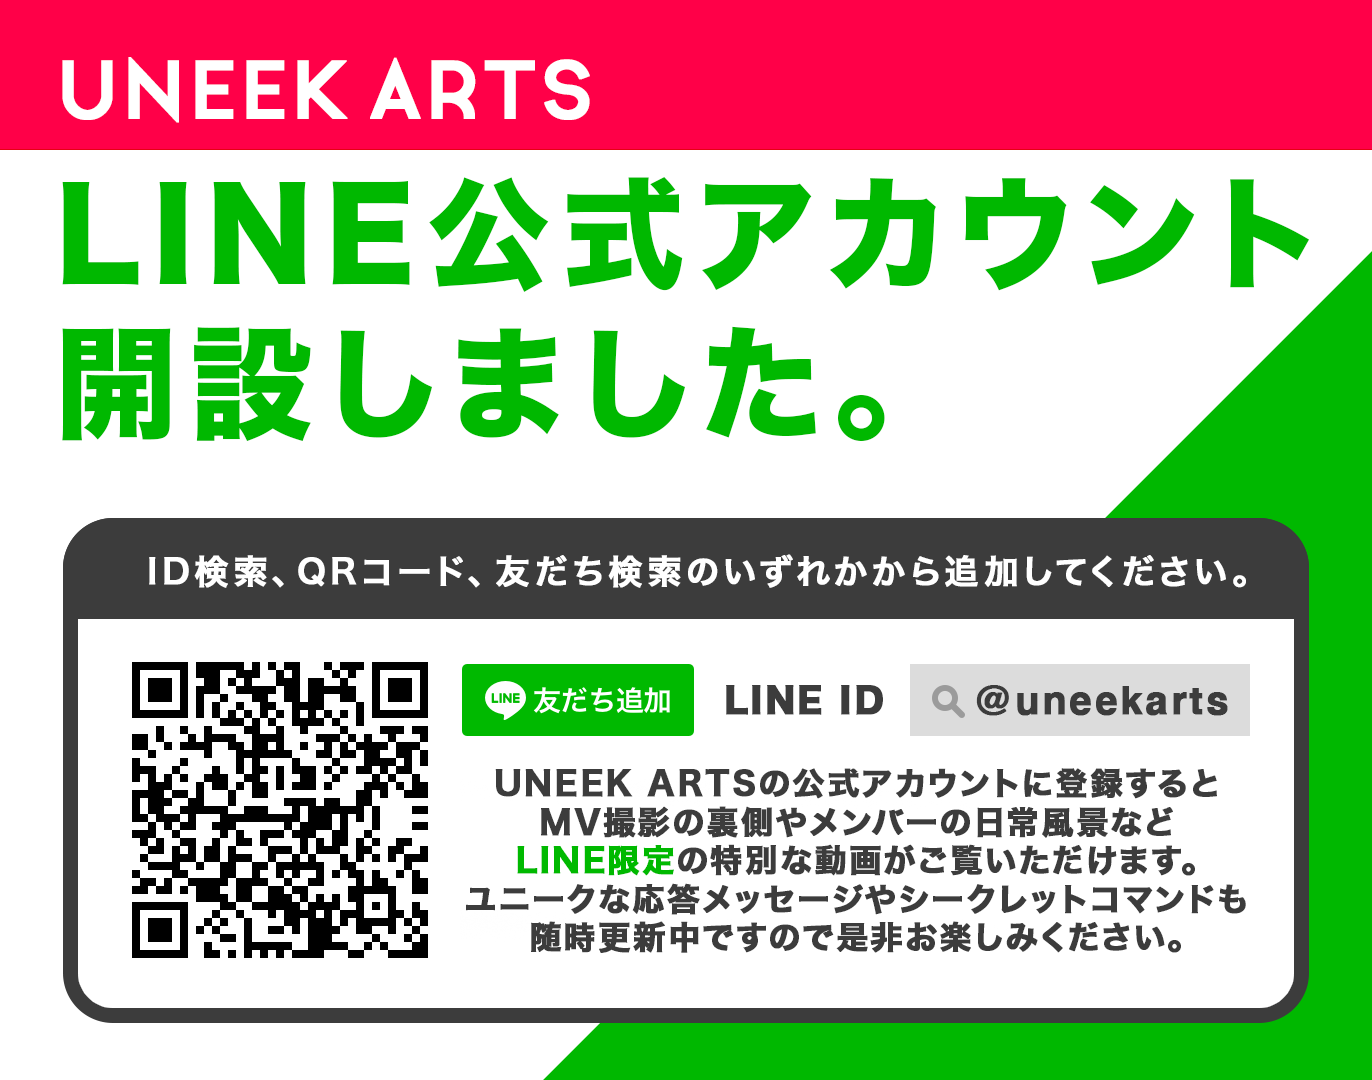 UNEEK ARTS LINE公式アカウント開設